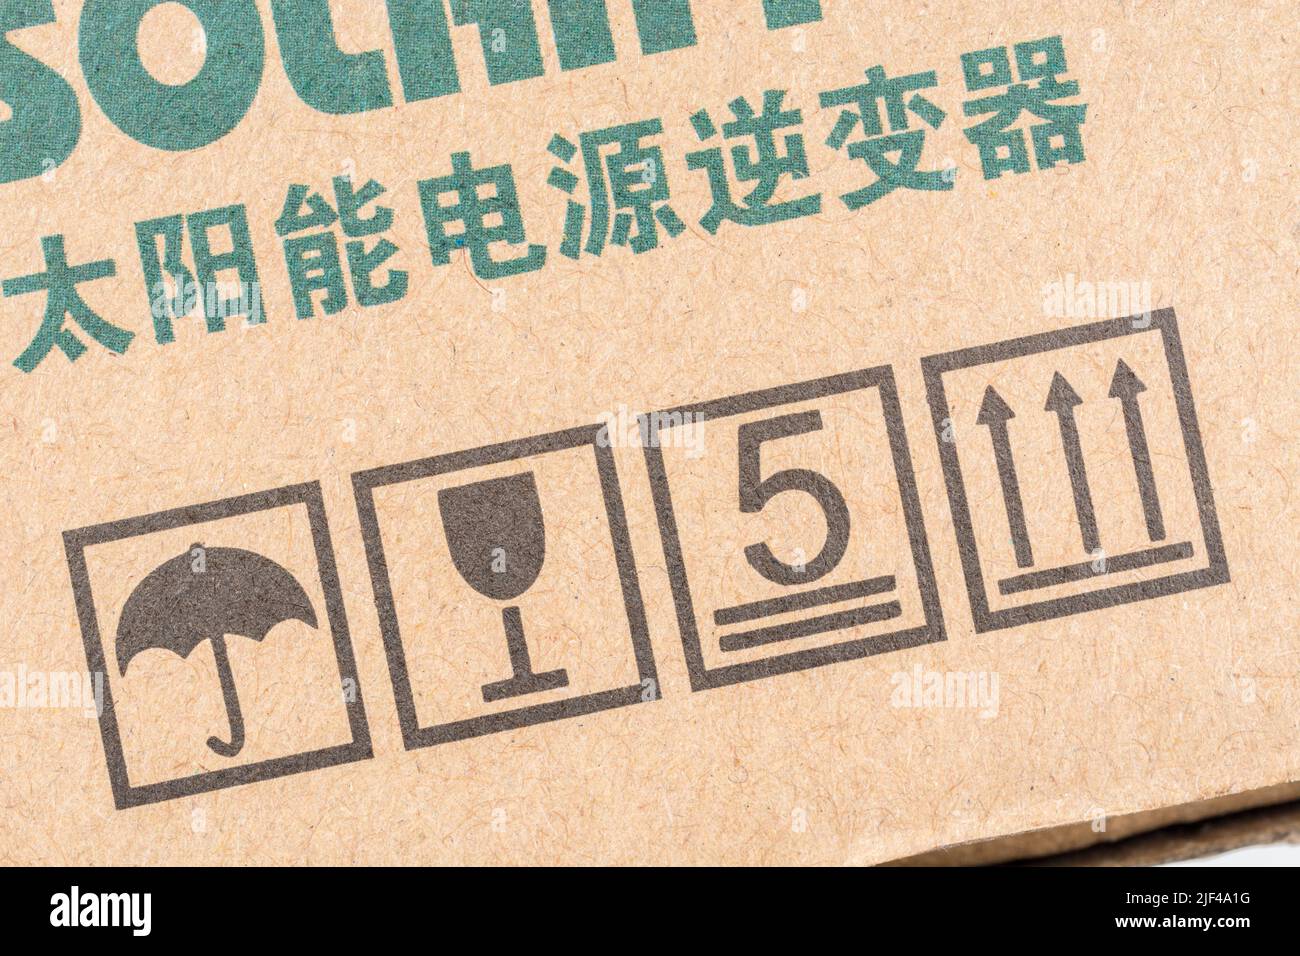 Caja de embalaje del inversor de energía solar chino con símbolos de embalaje internacionales impresos. Símbolo de mantener seco, icono de mantener en posición vertical, apilado de cajas, rompible. Foto de stock